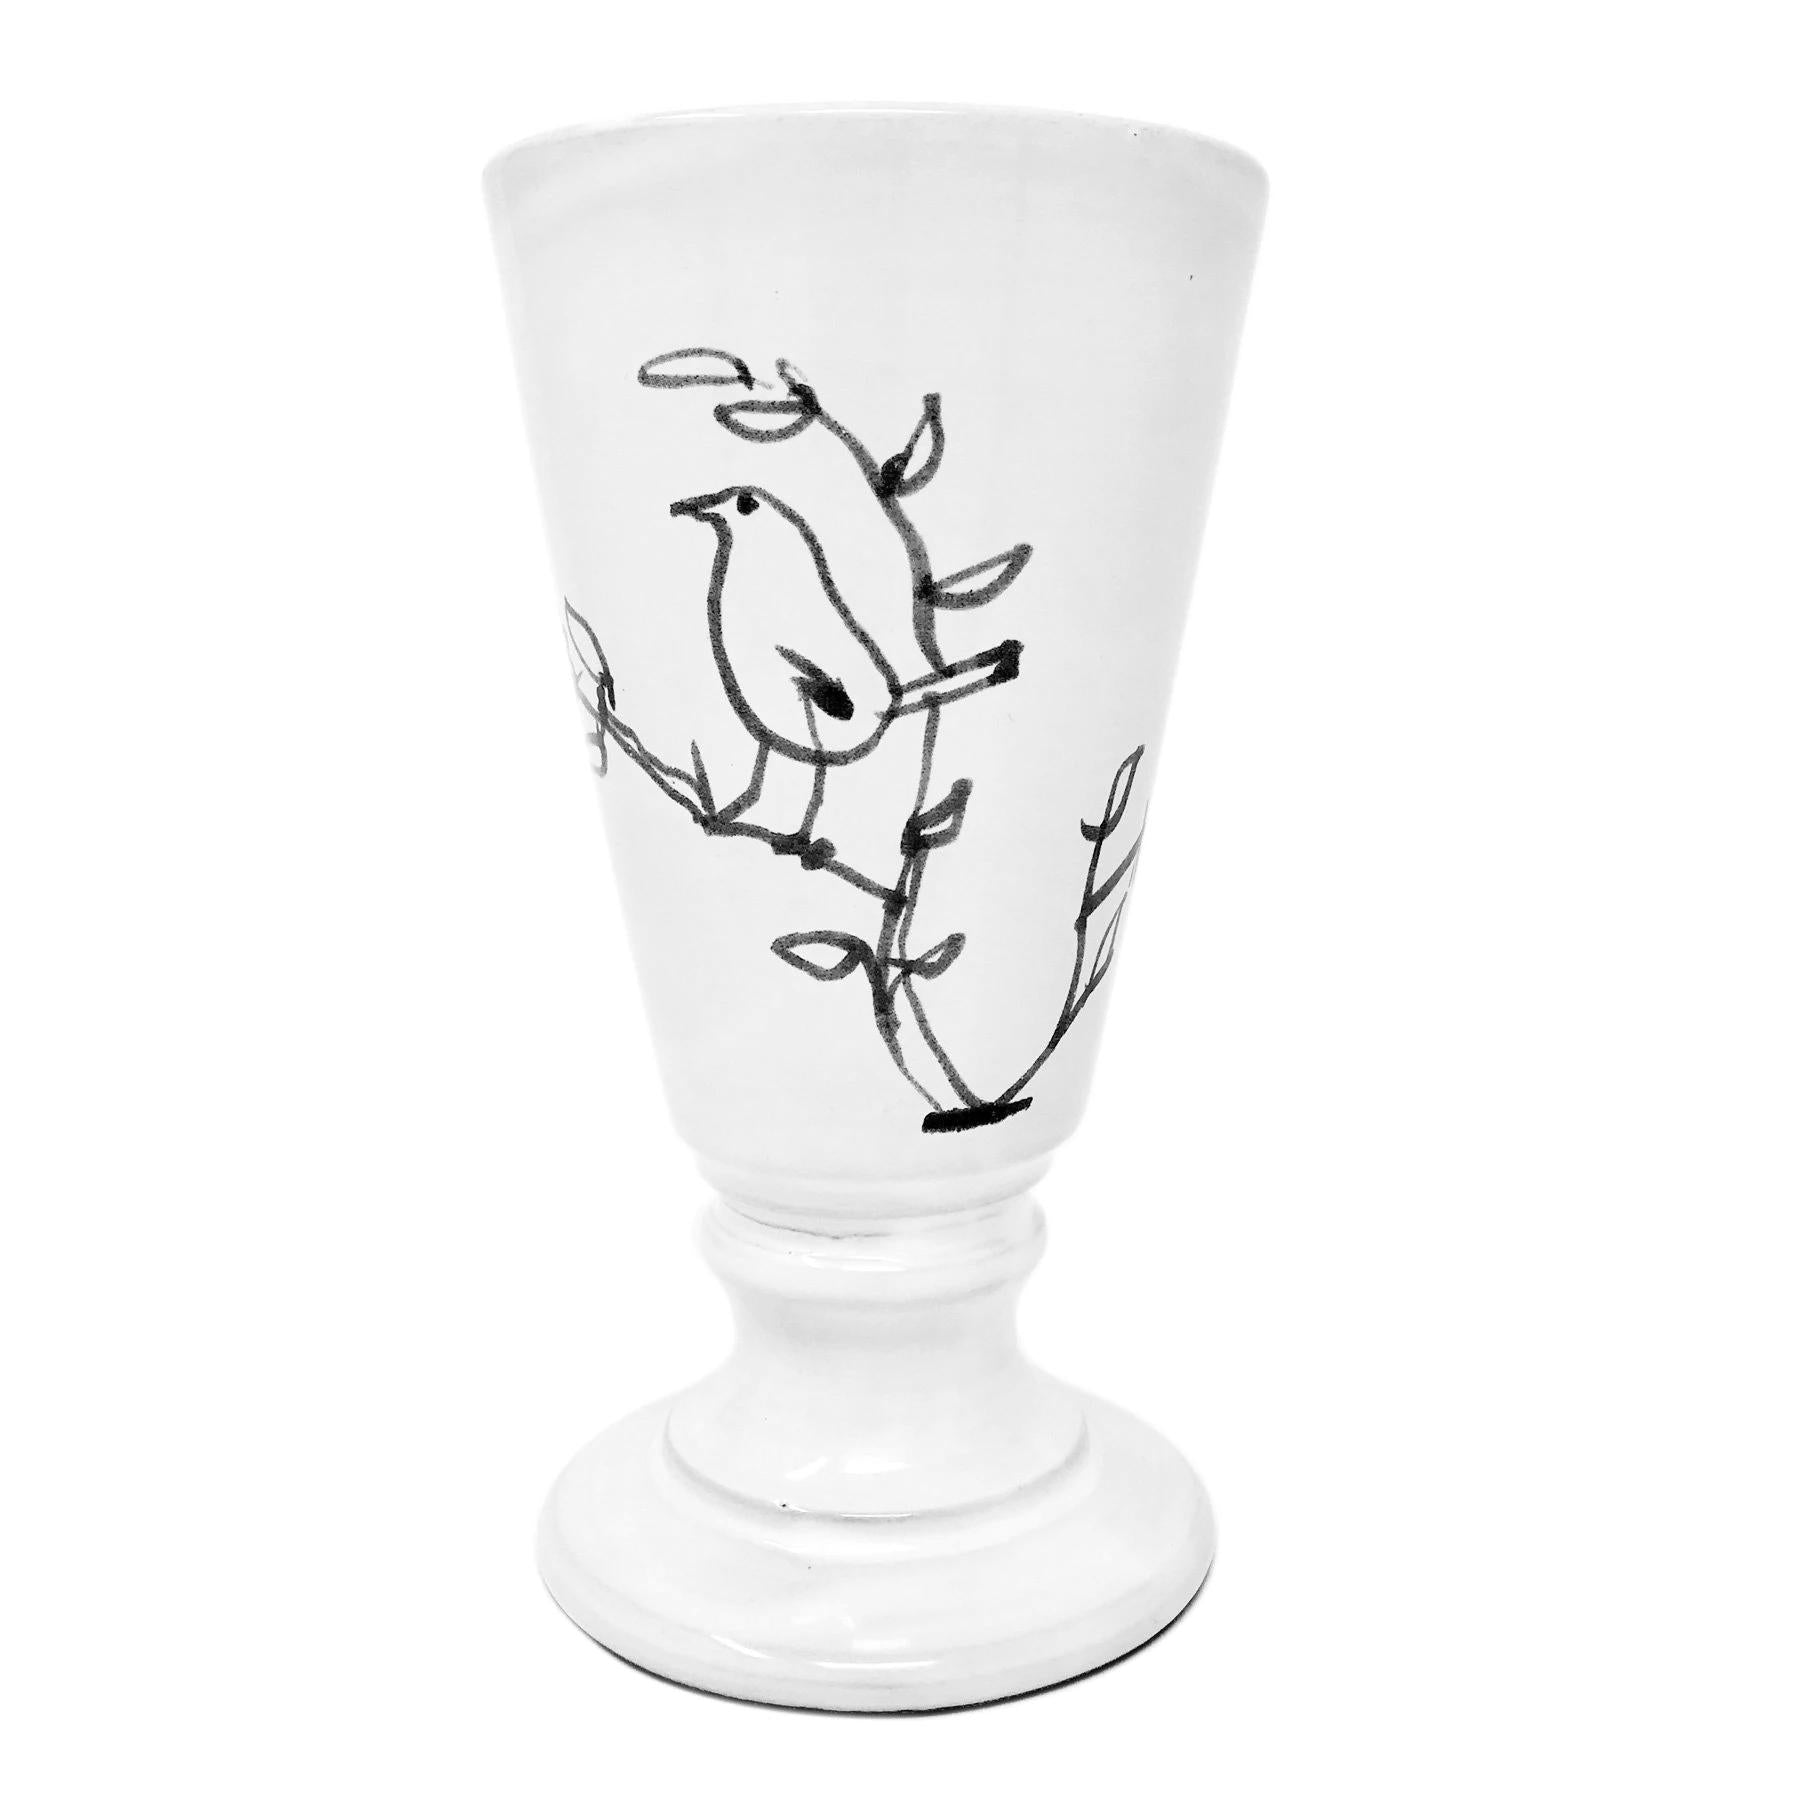 L'oiseau footed vase-8x8x14cm-CARRON-Paris